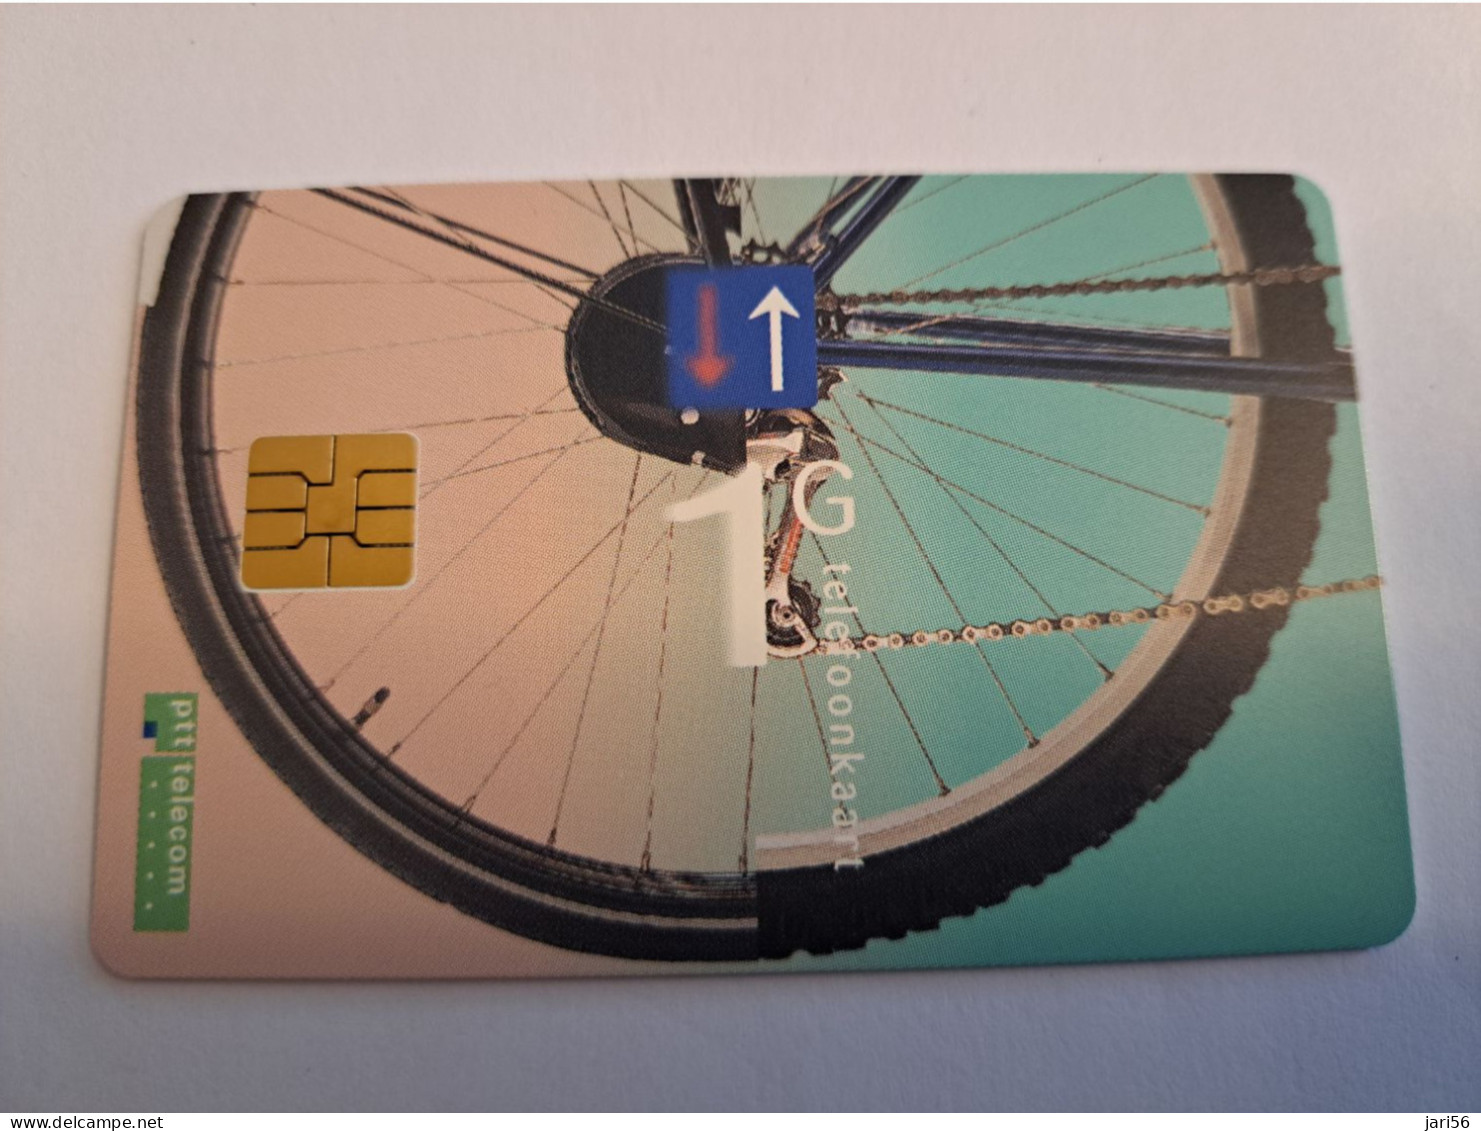 NETHERLANDS  HFL 1,00    CC  MINT CHIP CARD   / COMPLIMENTSCARD / FROM SERIE / MINT   ** 15951** - Cartes GSM, Prépayées Et Recharges